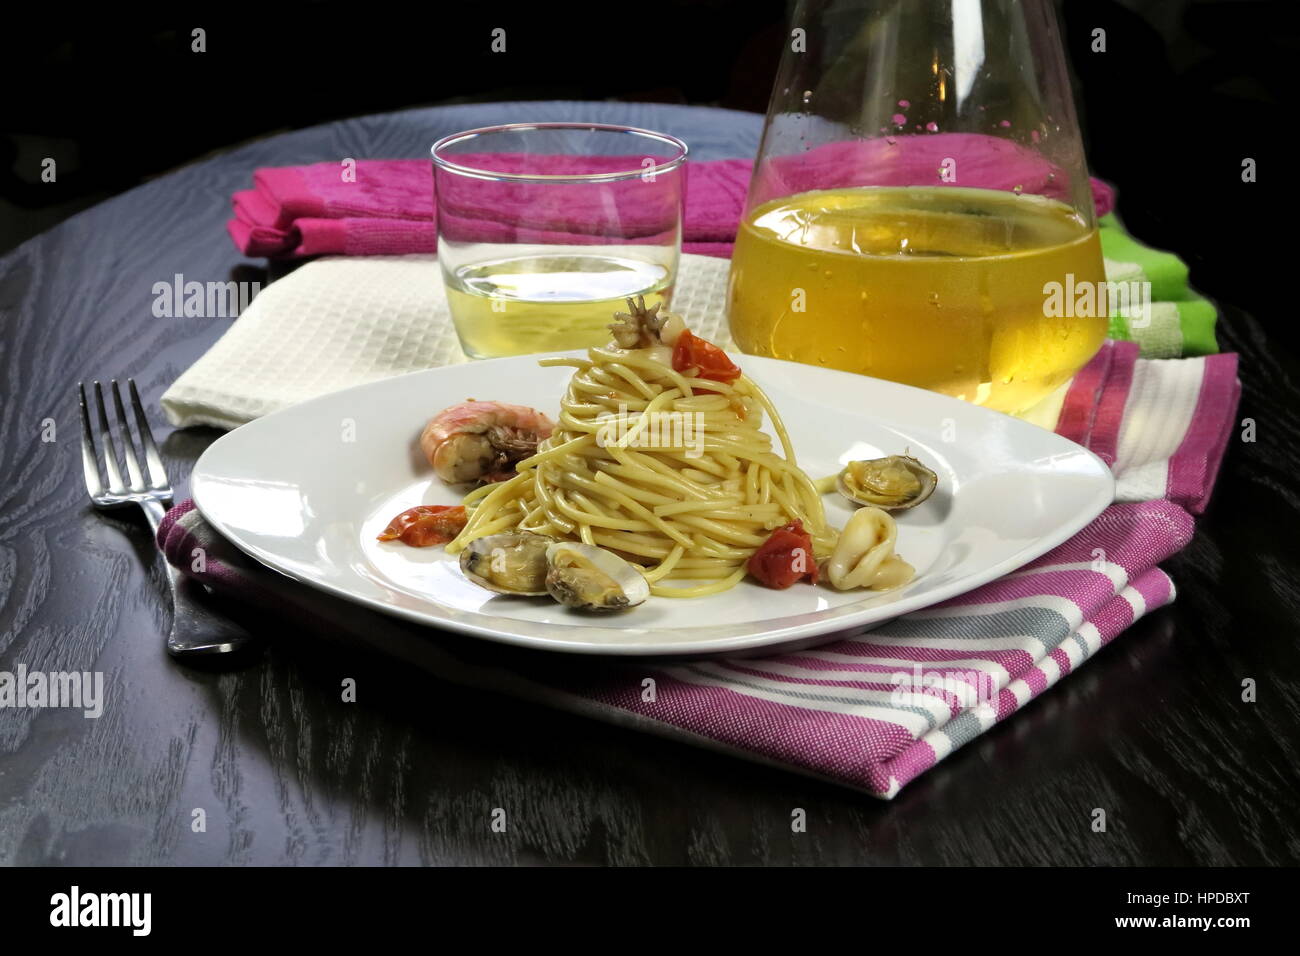 Pasta mit Meeresfrüchten in weißen Schale auf bunte Küchentücher und kühlen Weißwein (Glas und Karaffe) im Hintergrund. Italienische Spaghetti allo Scoglio Rezept Stockfoto